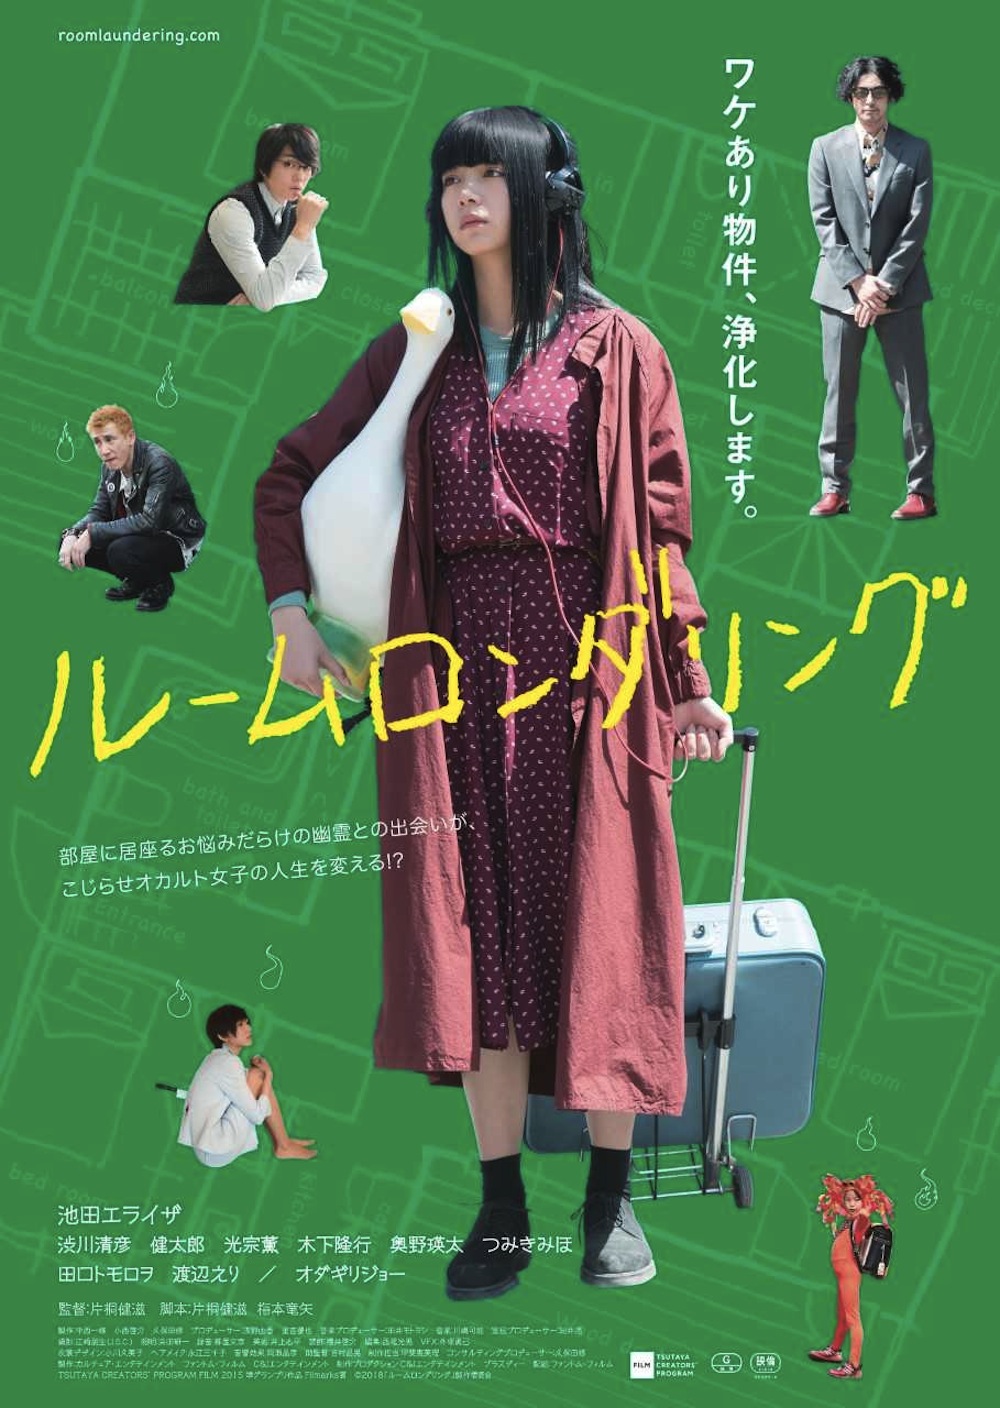 池田エライザが主演を務めた映画『ルームロンダリング』